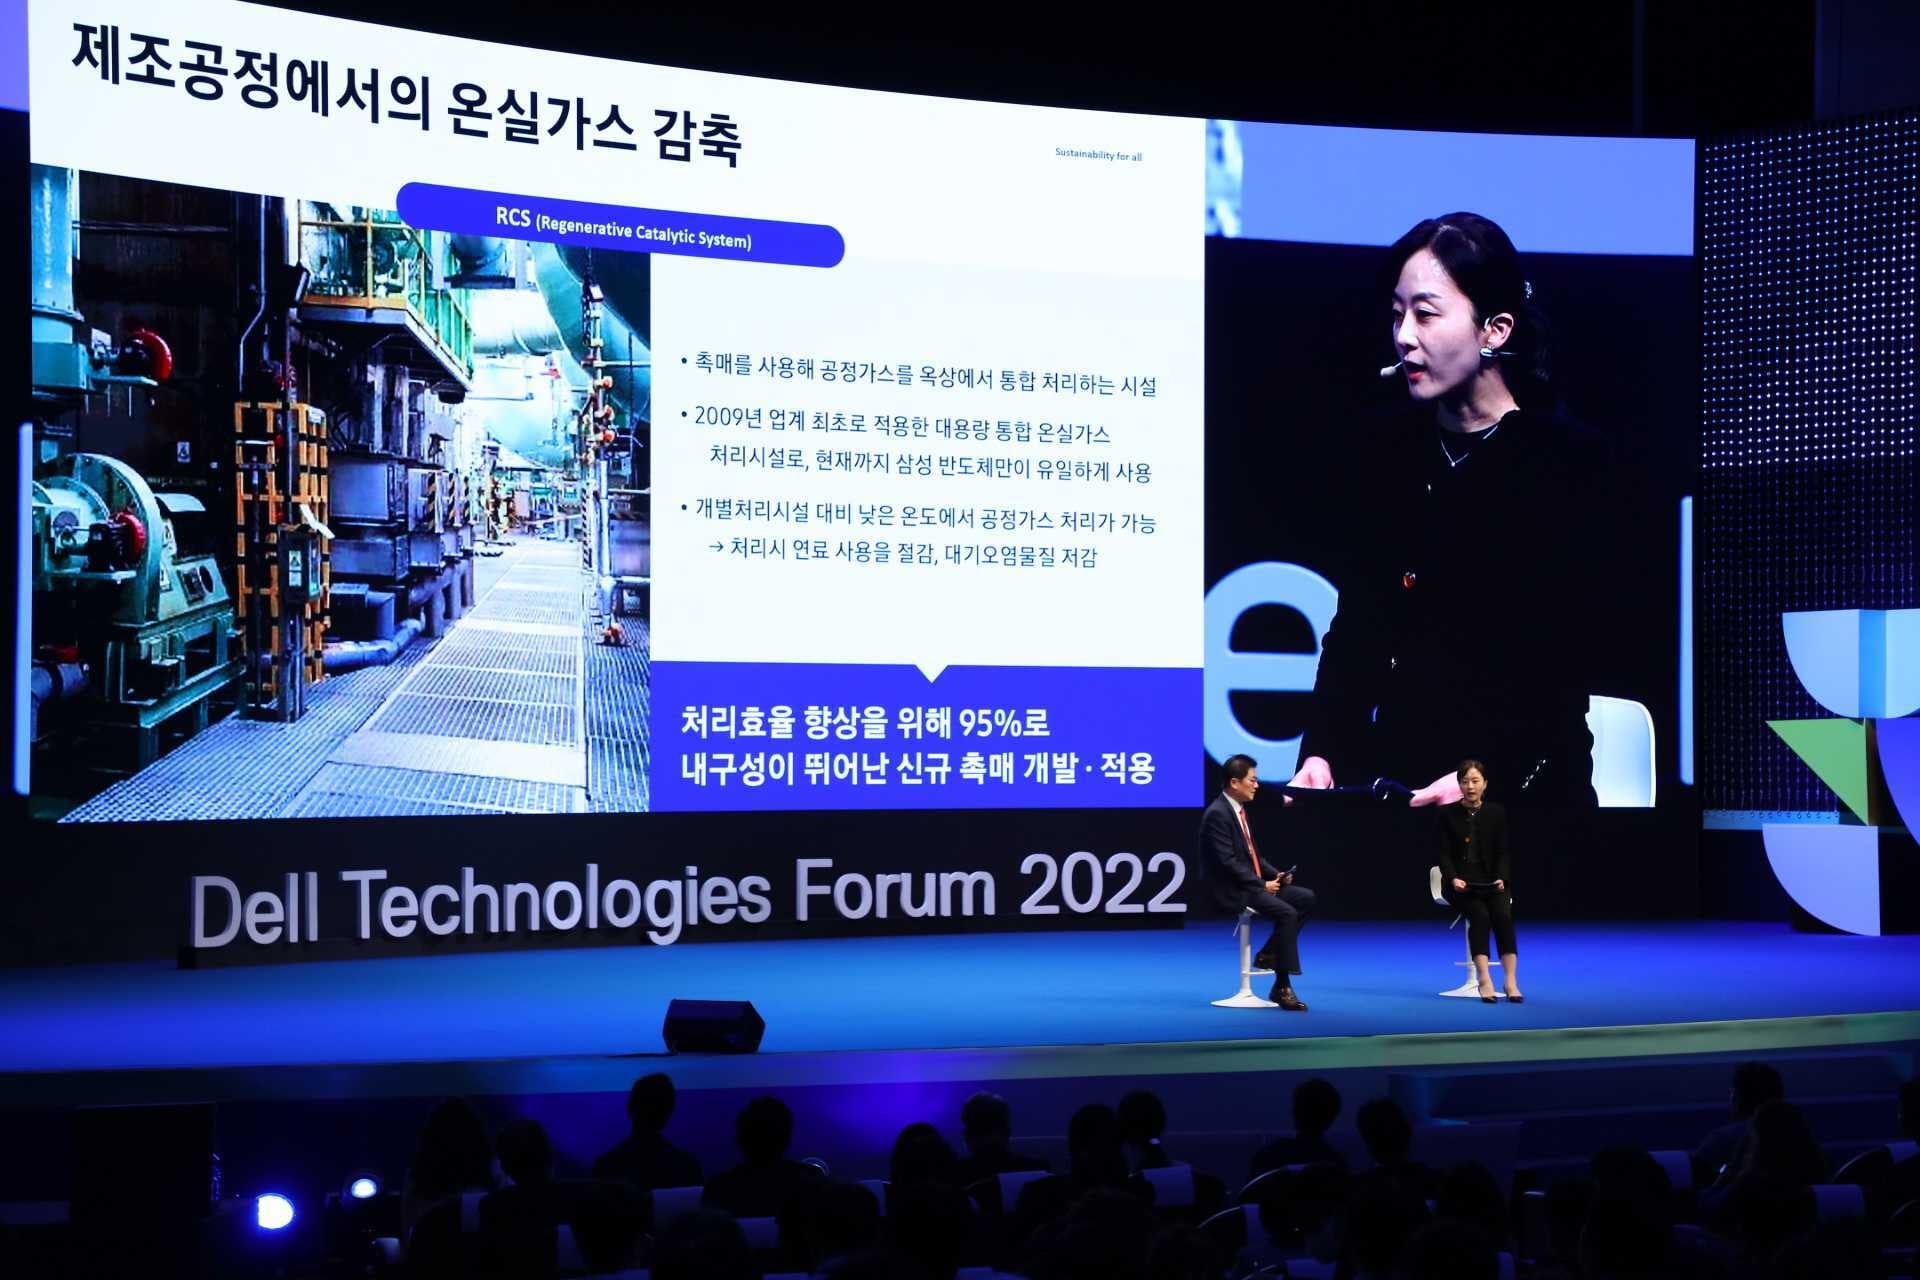 三星电子 DS 企业可持续发展副总裁 HyunJung Seo（Seo，在做主题演讲。）